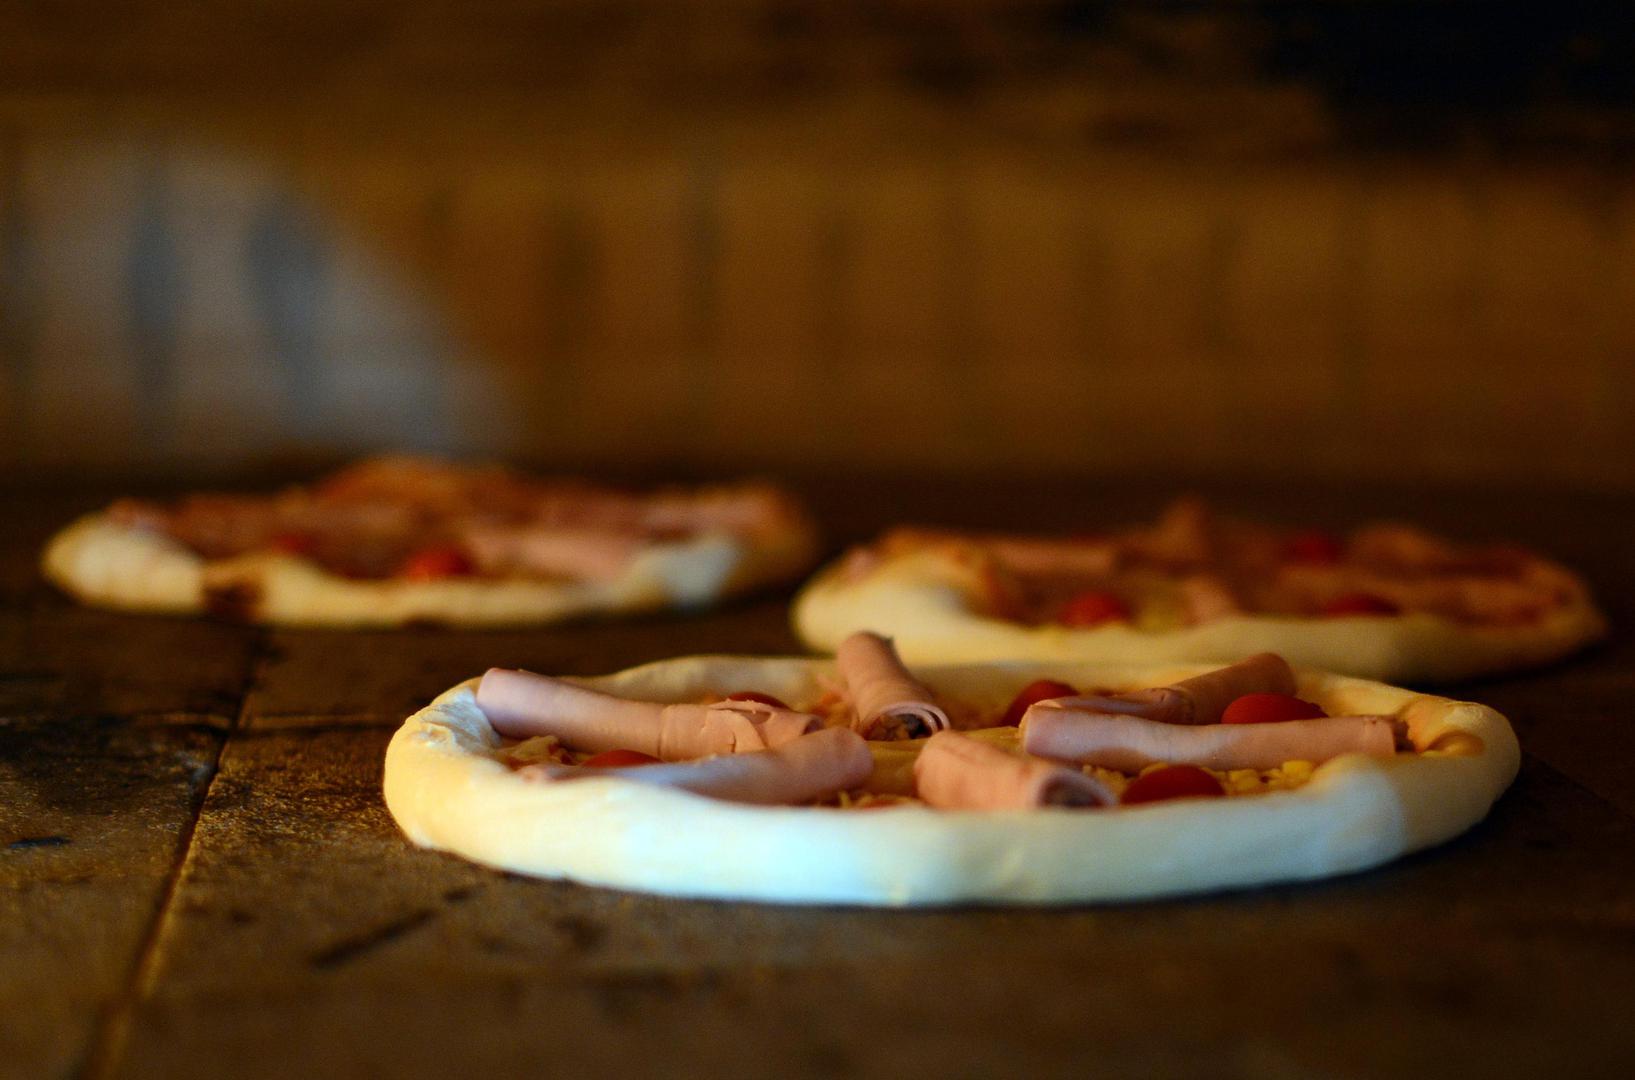 Mnogi misle o tome što će staviti na pizzu, mozzarellu, povrće, dimljenu šunku, kulen i sl., no pritom zaboravljaju na tijesto. Stručnjaci tvrde kako je riječ o "termodinamici", odnosno, temperaturi pečenja. 